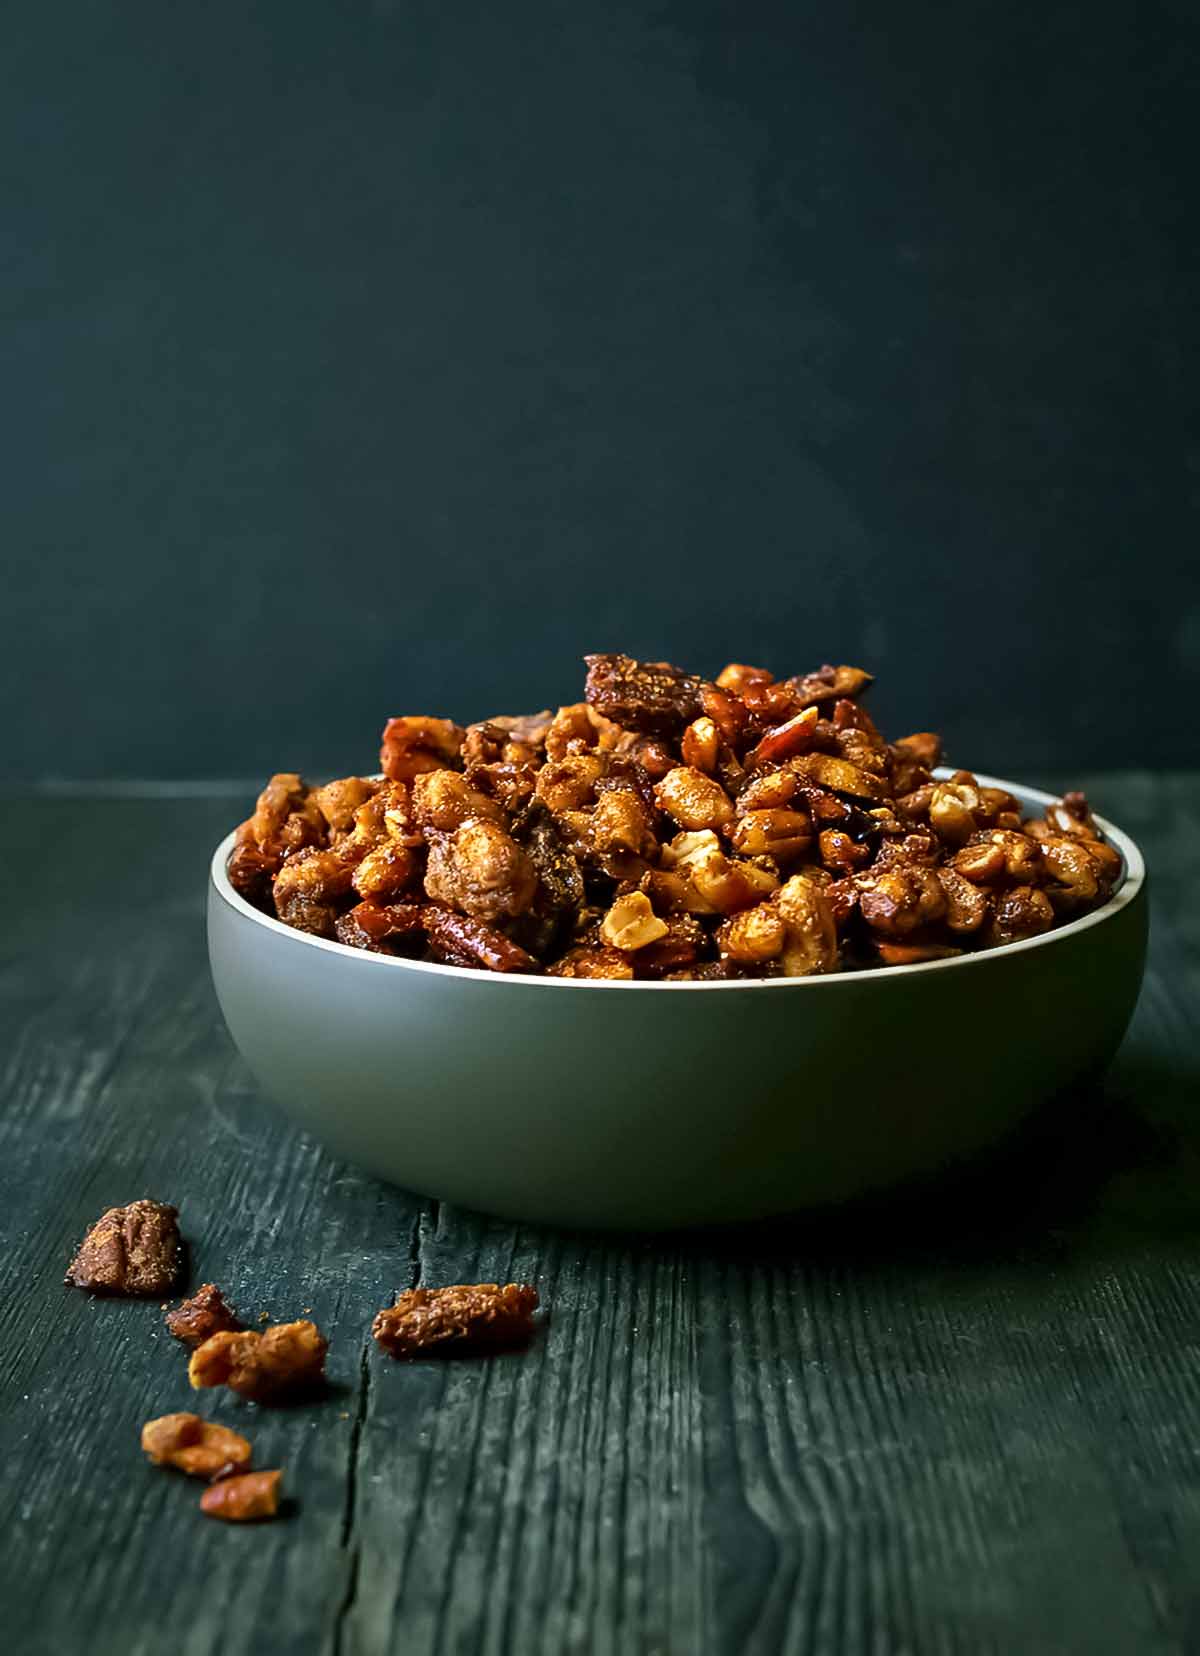 Söta och kryddiga rostade nötter i en stor grön skål på ett träbord.